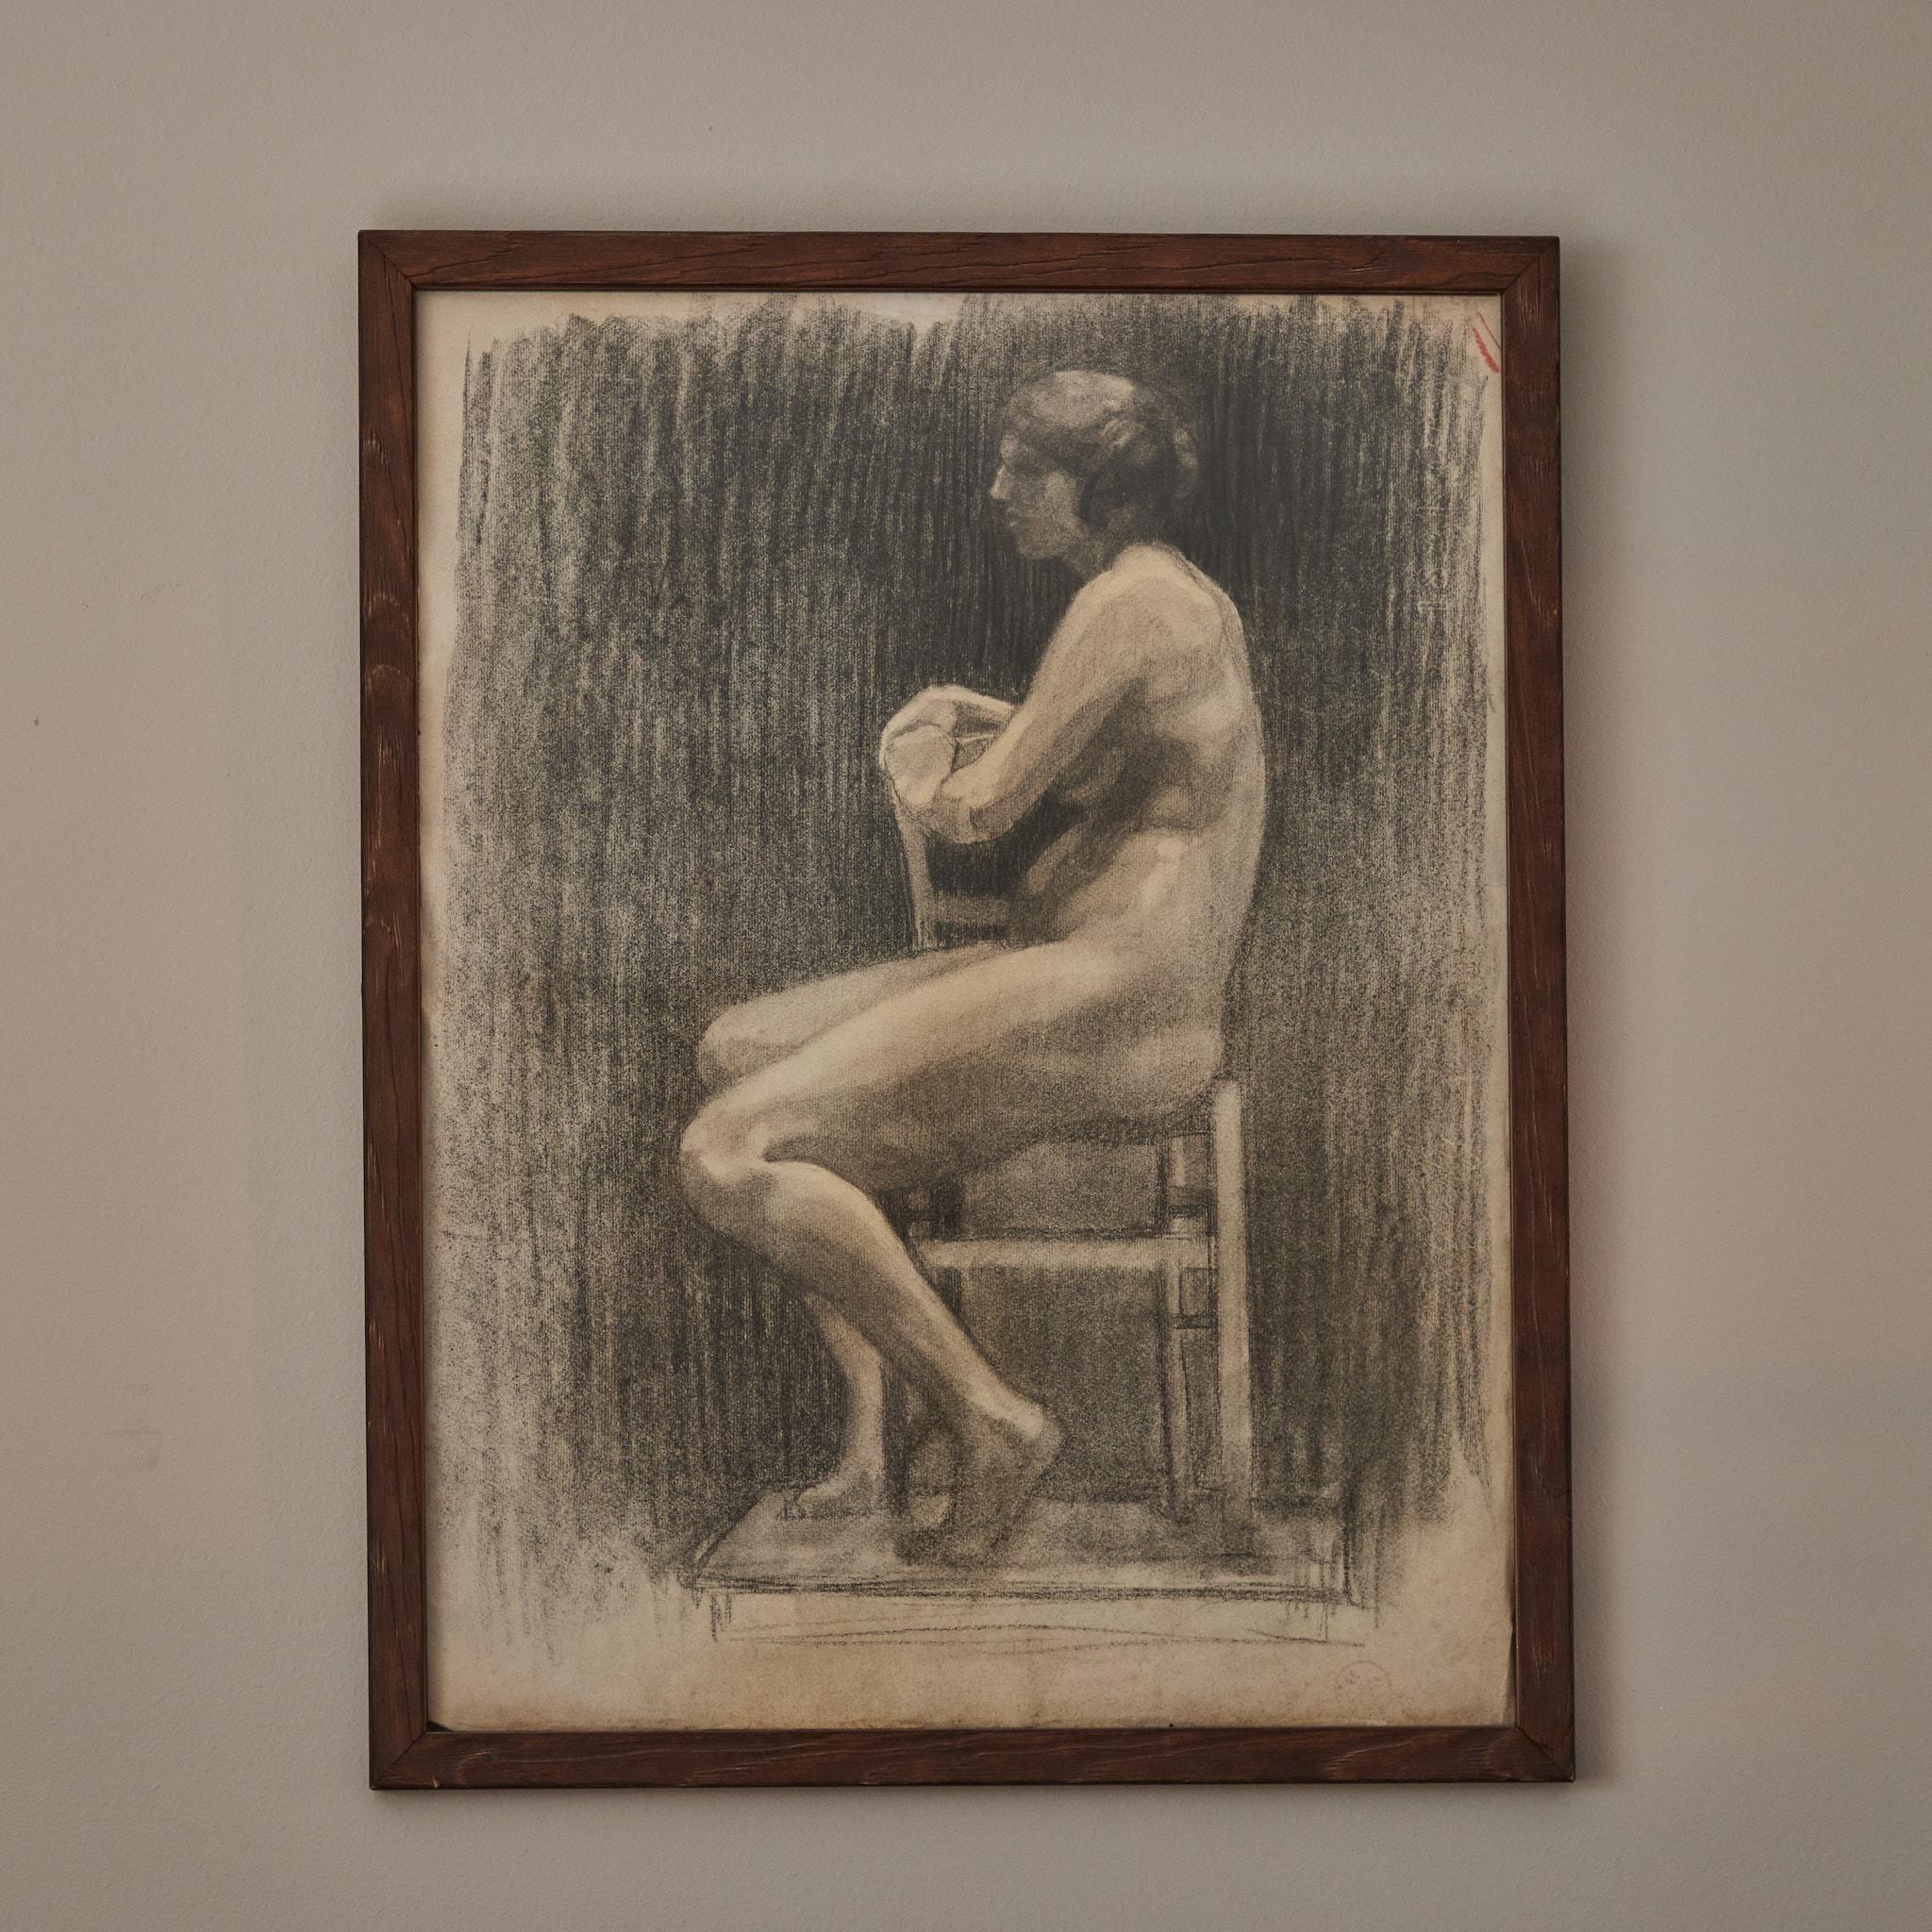 Dessin au fusain de l'Académie française du début du XXe siècle représentant un modèle féminin nu assis. Montée dans un cadre en bois personnalisé, l'image a une qualité pensive, et un beau traitement de la lumière et des ombres.